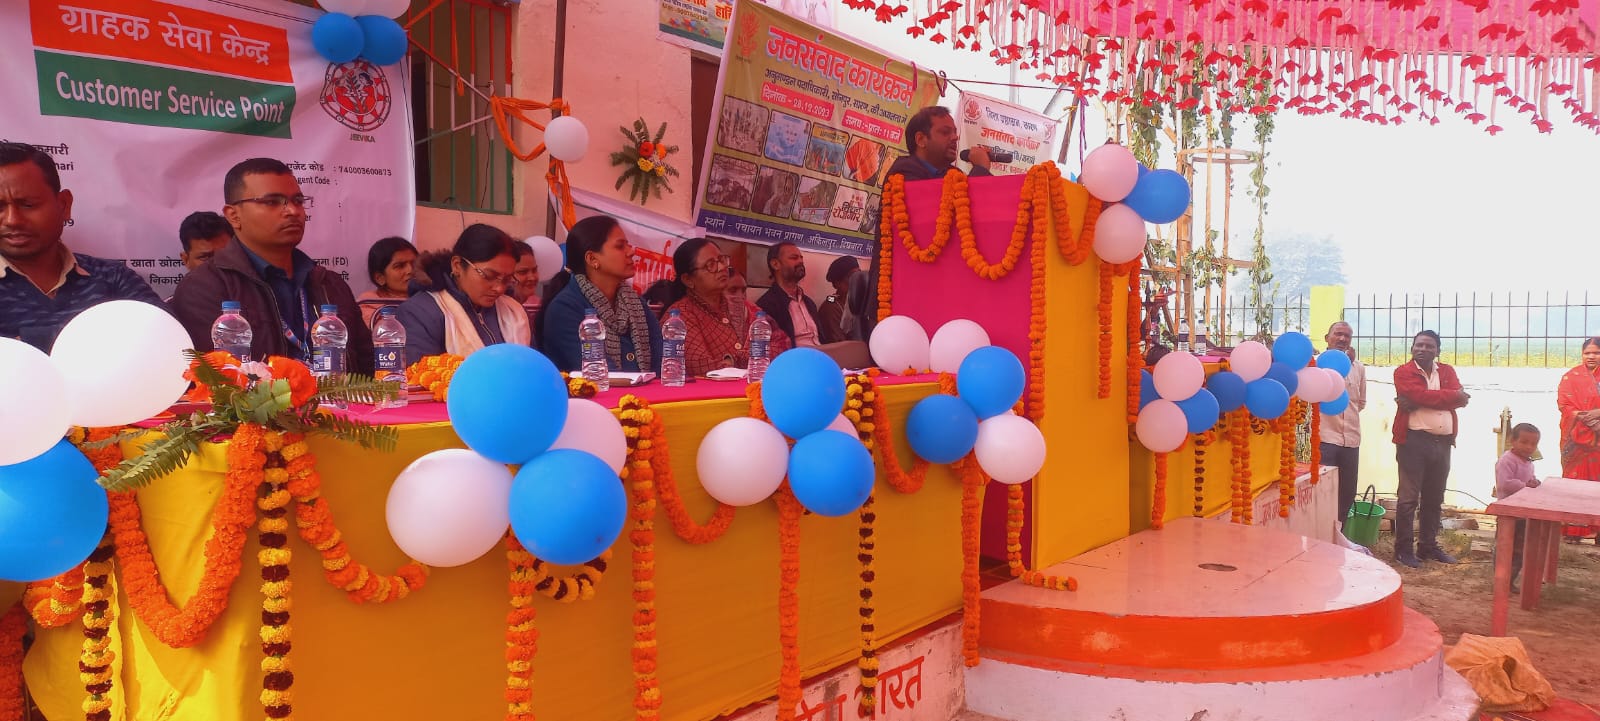 दिघवारा के अकिलपुर पंचायत में जनसंवाद कार्यक्रम का हुआ आयोजन